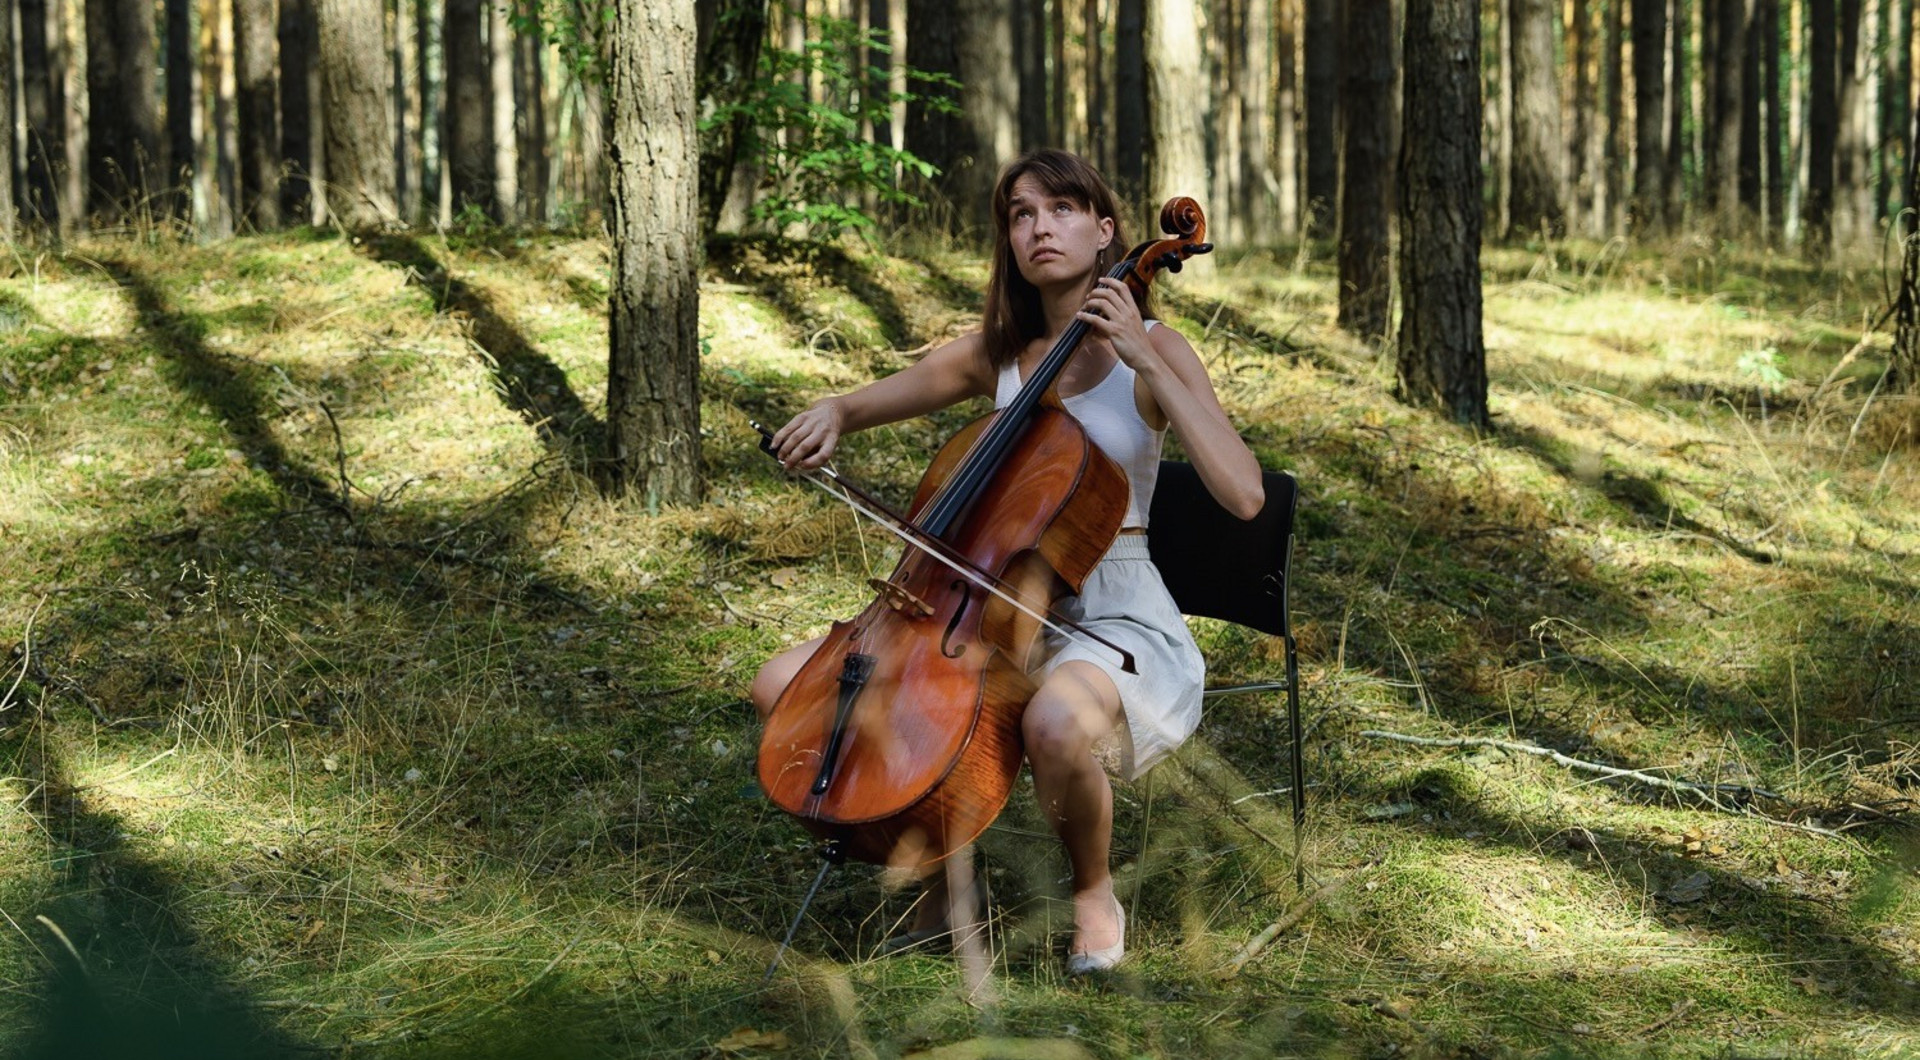 Cellistin sitzt mit ihrem Instrument im Wald